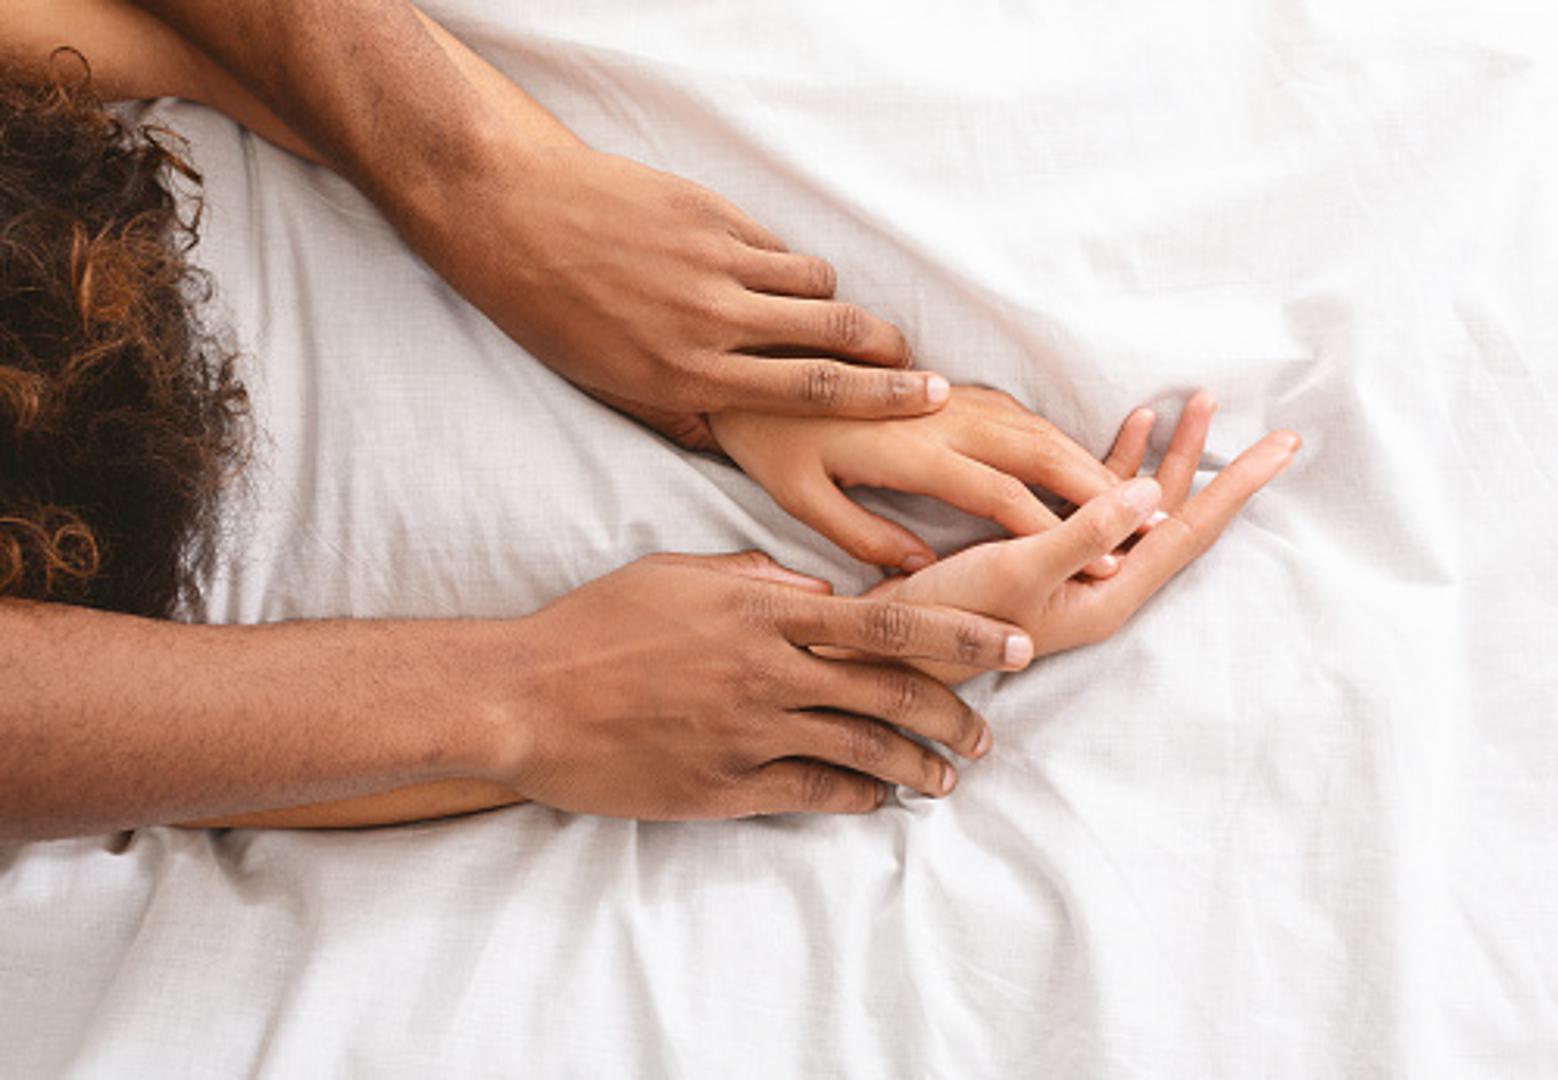 Male promjene u spavaćoj sobi će bitno utjecati na bolji seksualni život, ali i na sreću oba partnera. Neke stvari bi ipak trebalo izbjegavati u krevetu.